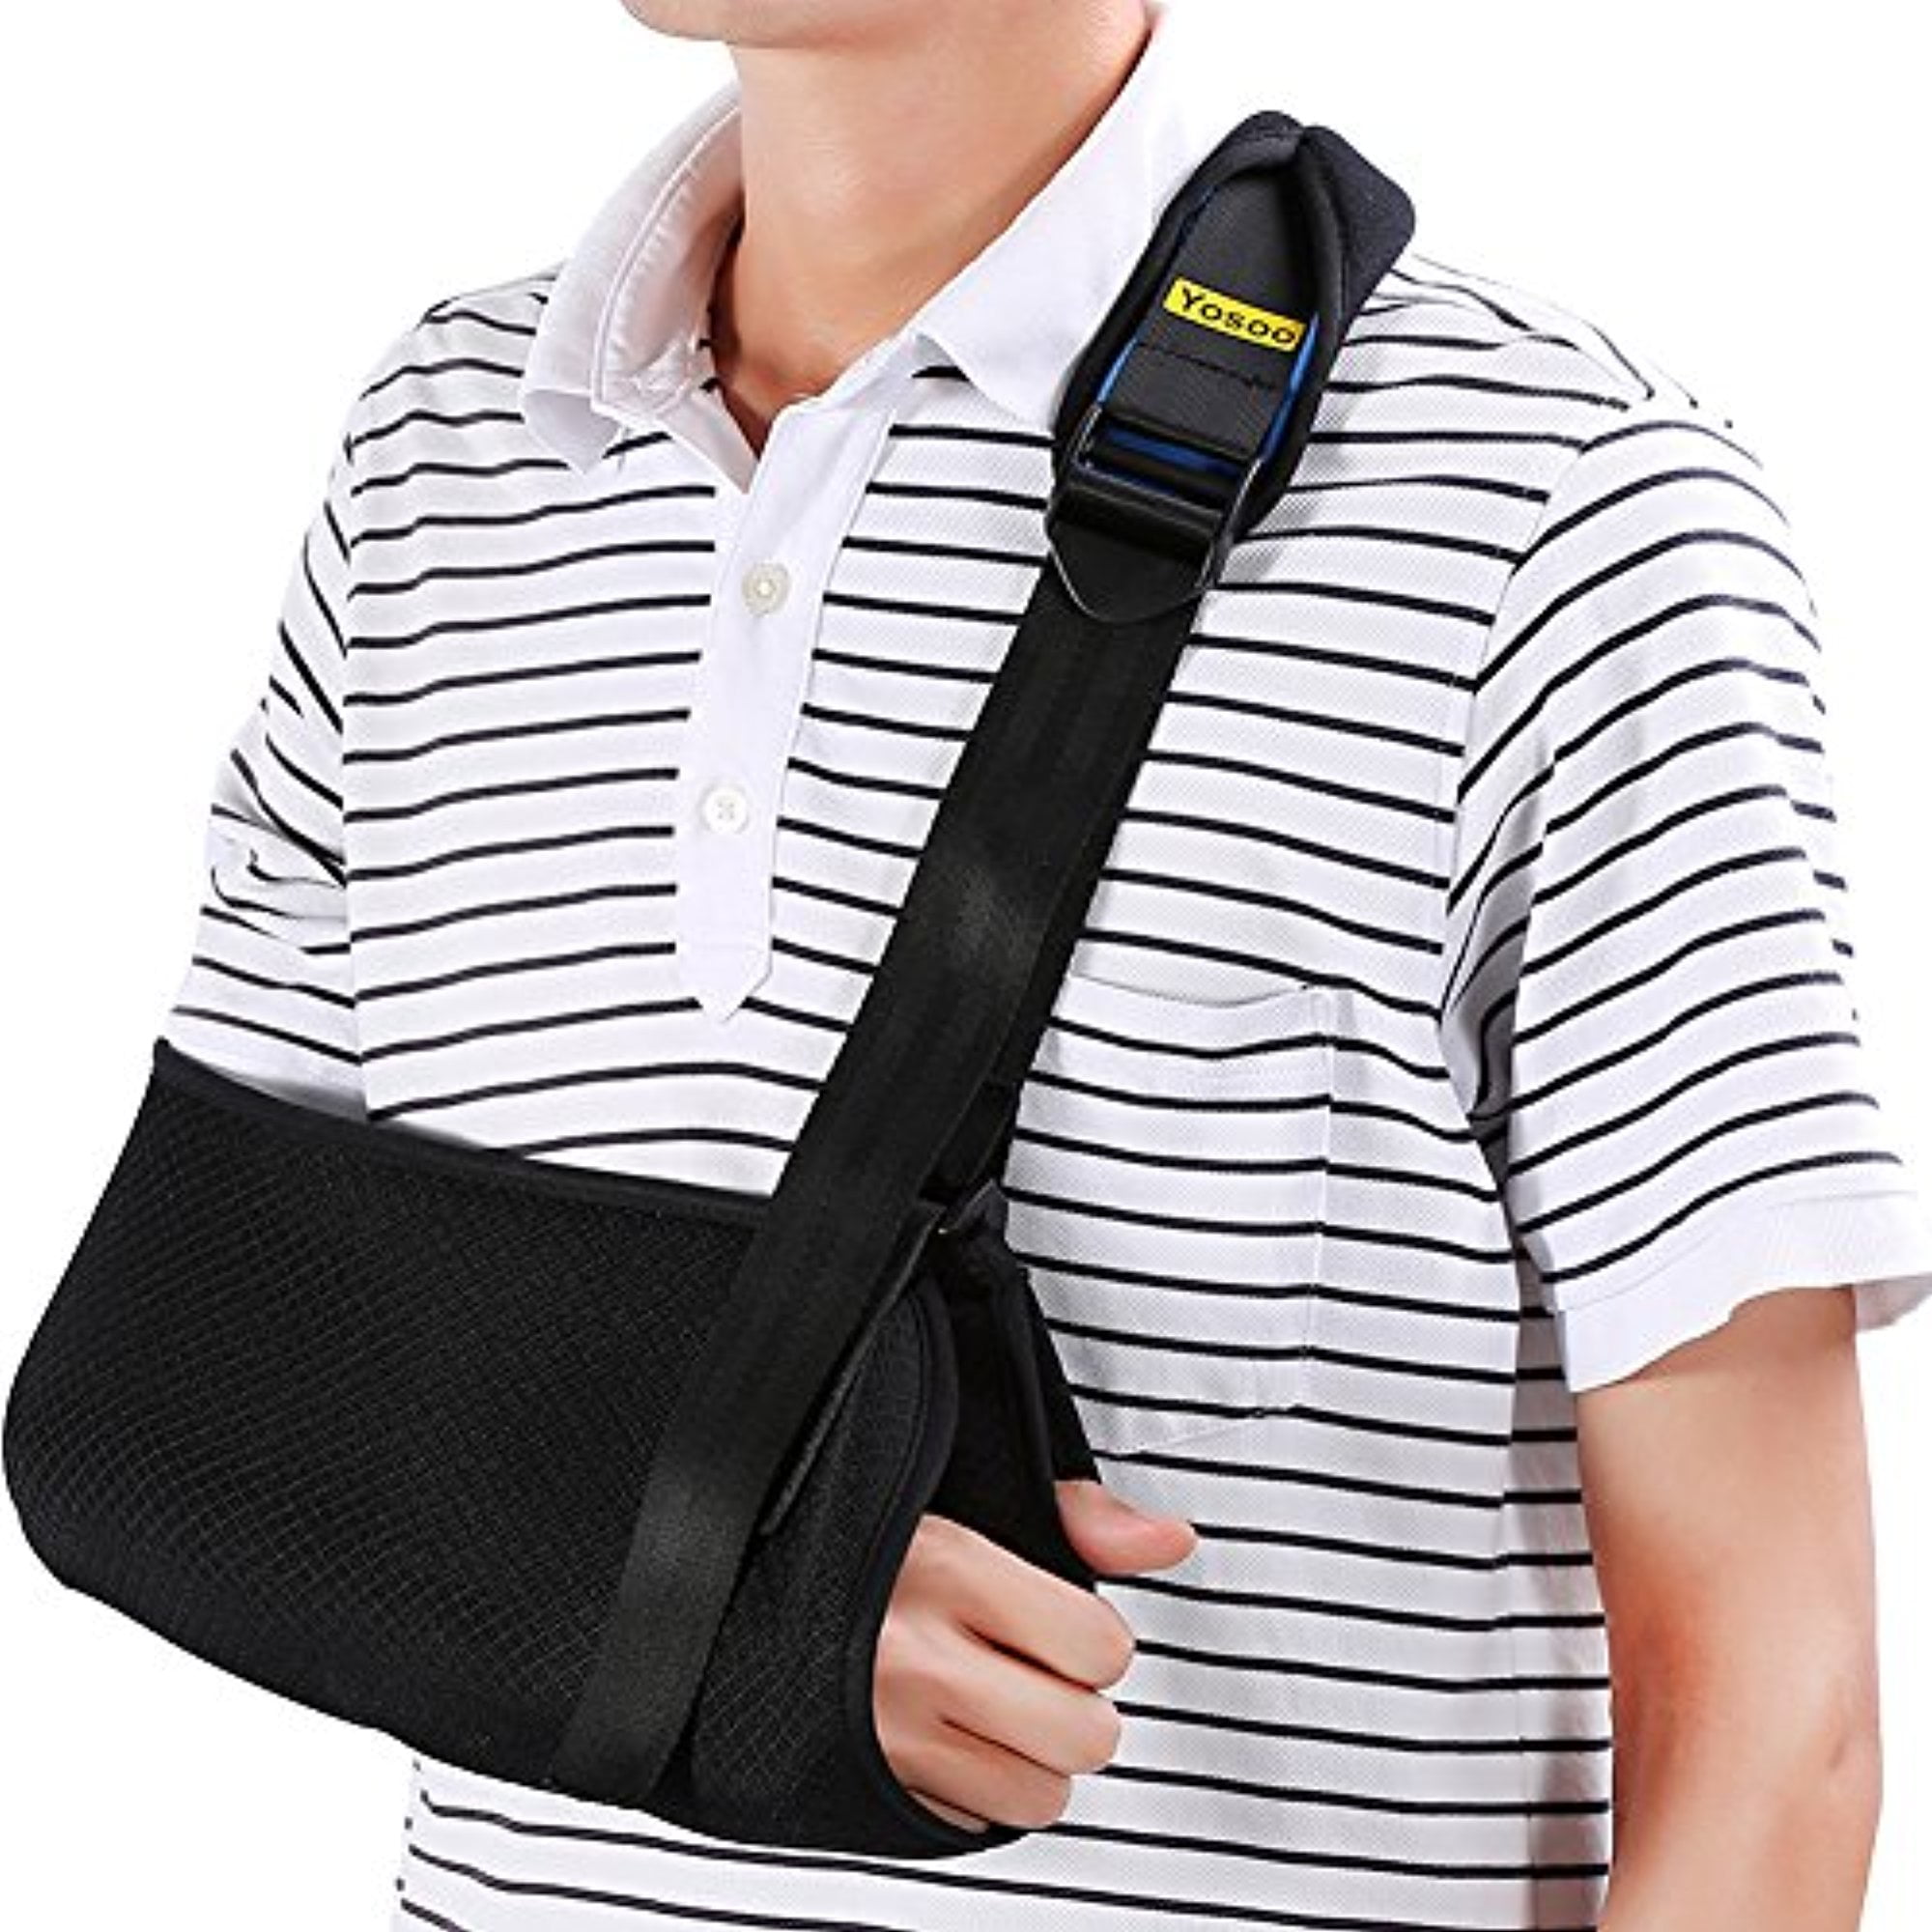 Yosoo Arm Sling Shoulder Sling Medical Shoulder Immobilizer Rotator